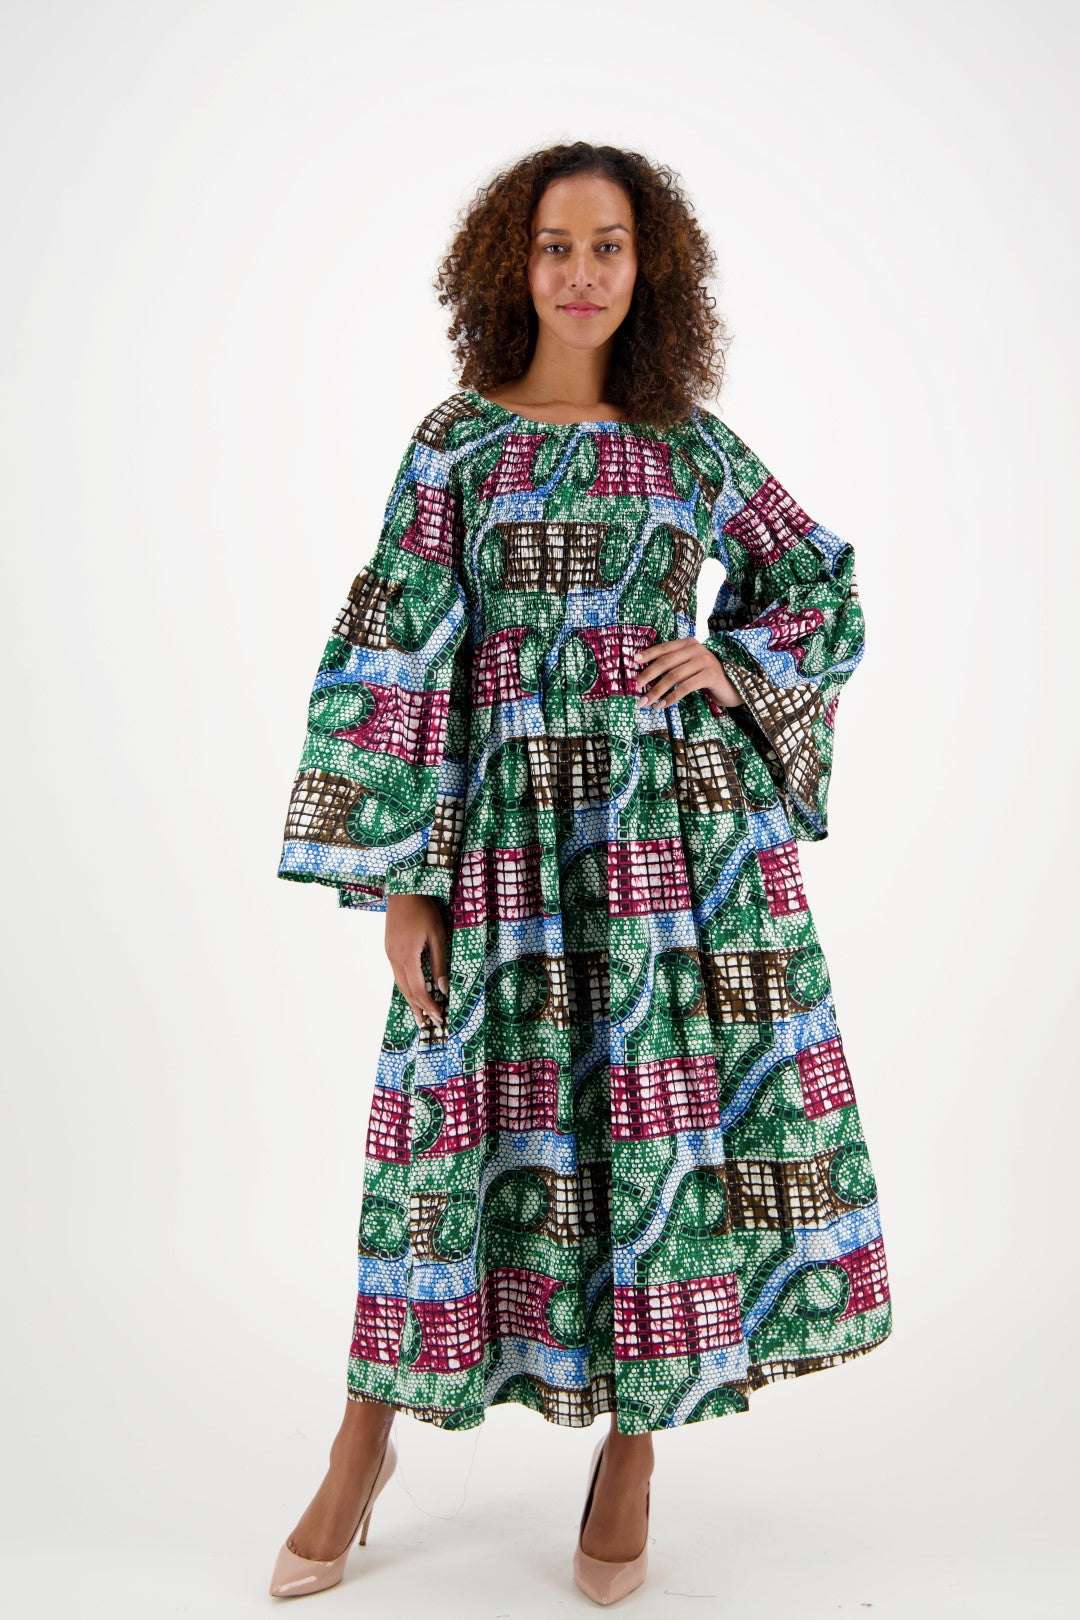 Off Shoulder African Print Maxi Dress 2190-37 - Advance Apparels Inc